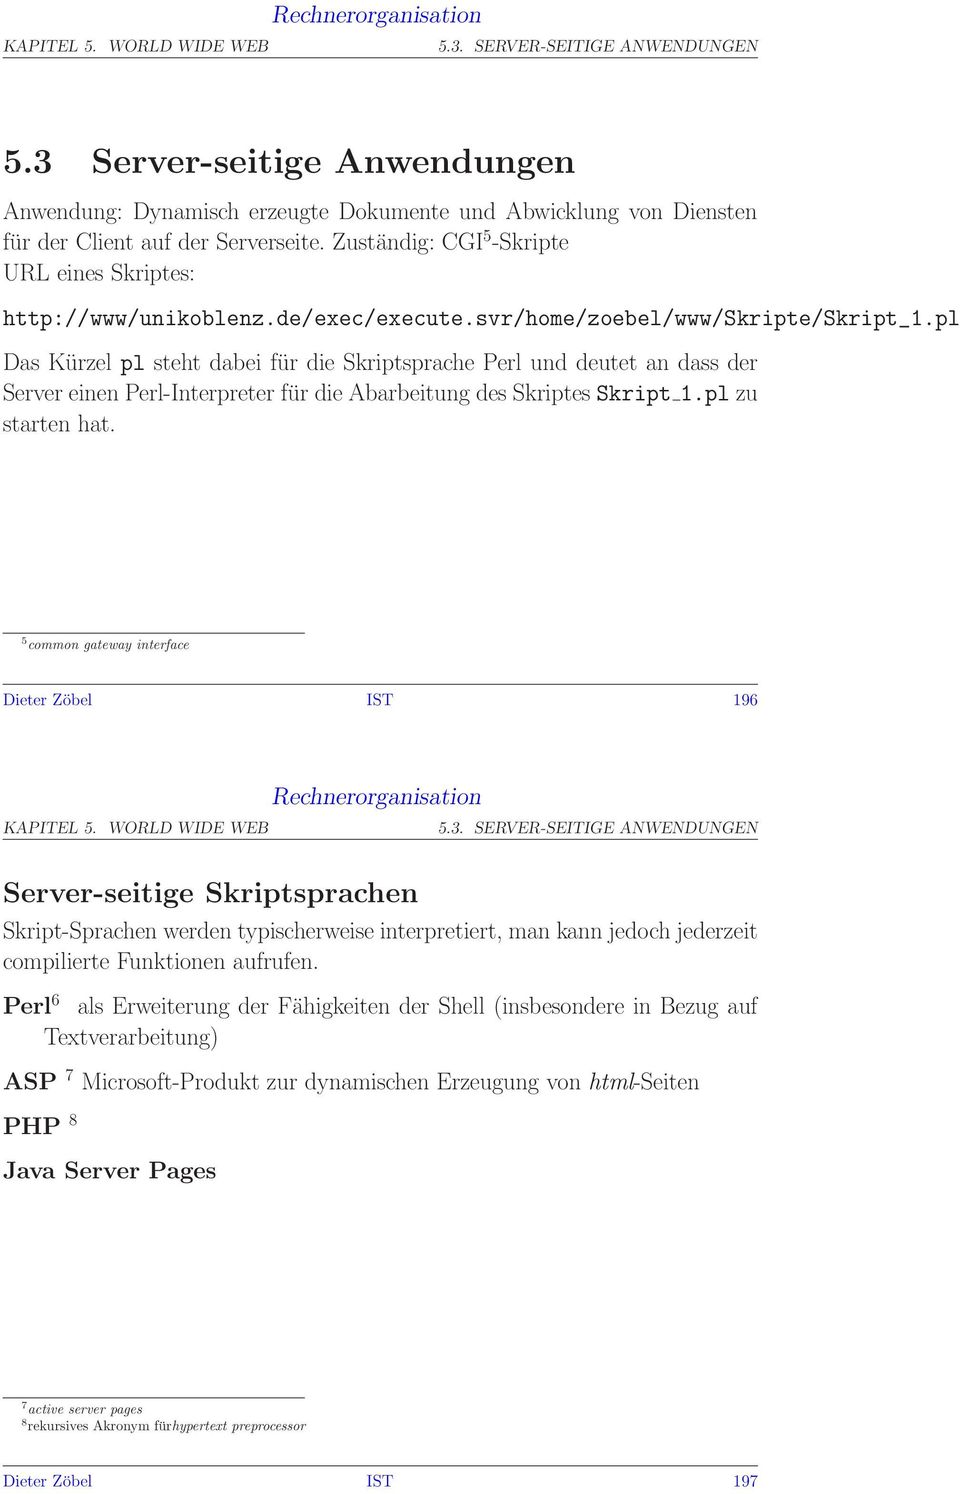 pl Das Kürzel pl steht dabei für die Skriptsprache Perl und deutet an dass der Server einen Perl-Interpreter für die Abarbeitung des Skriptes Skript 1.pl zu starten hat.